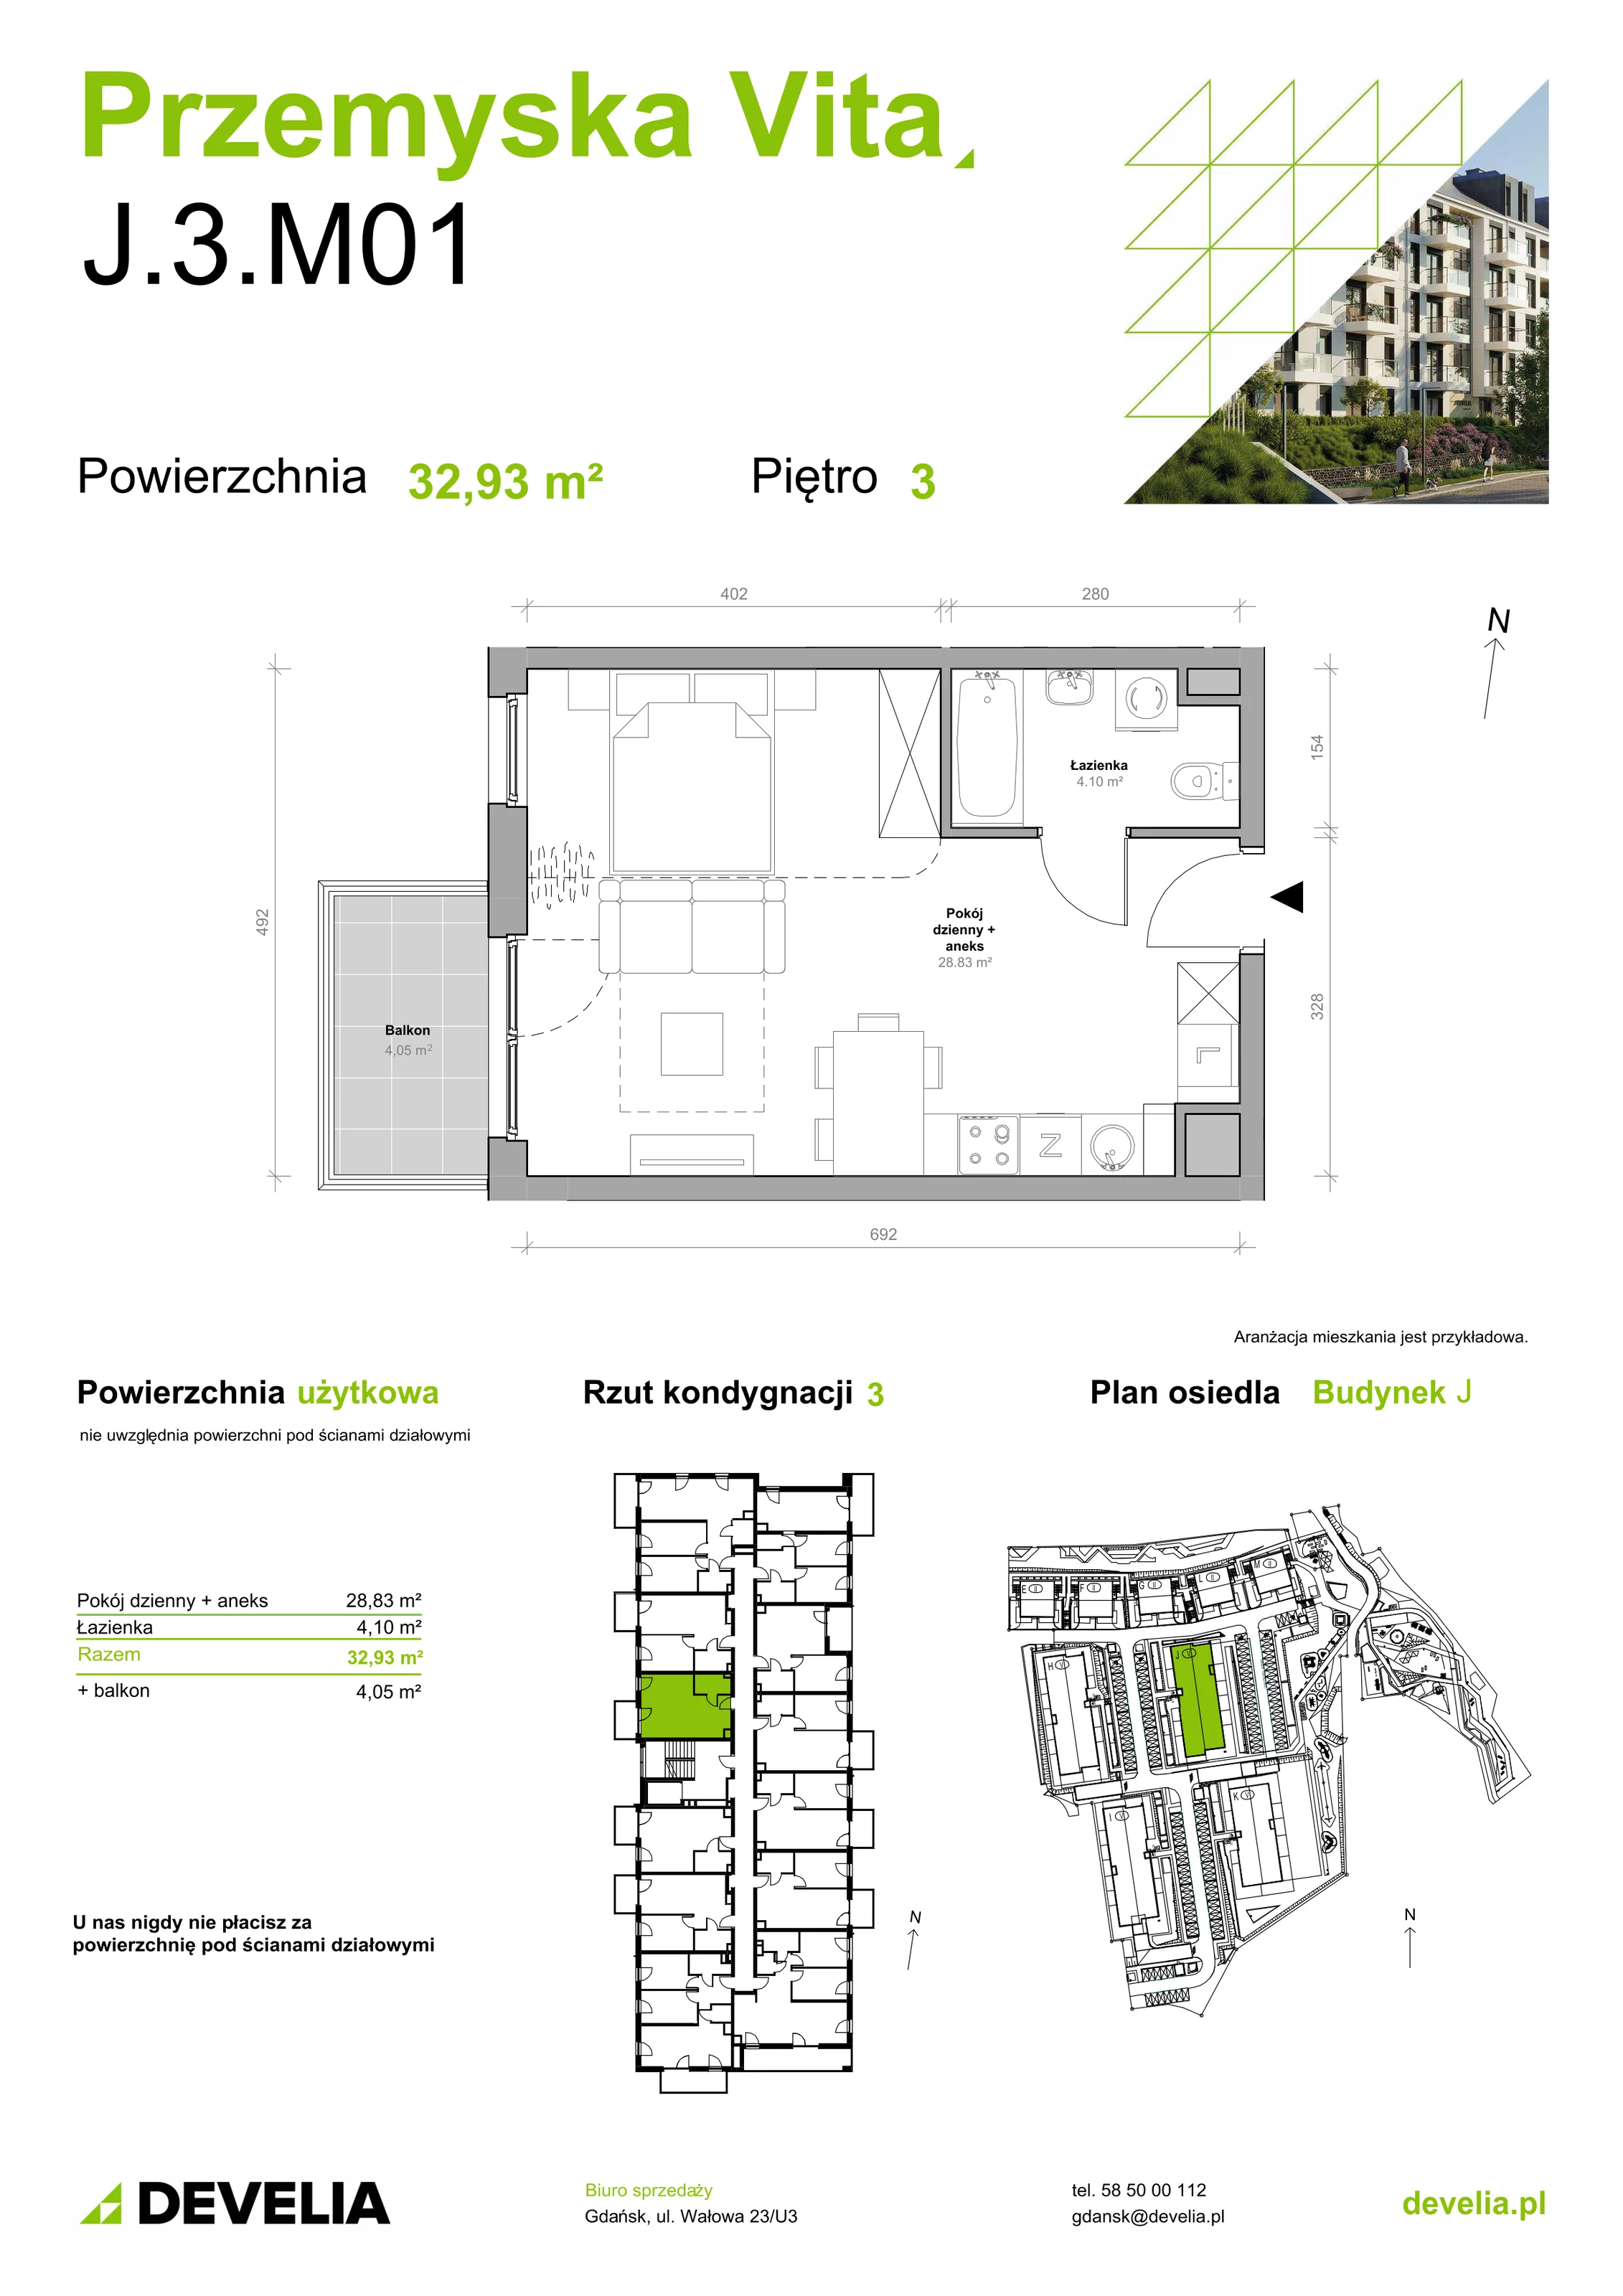 Mieszkanie 32,93 m², piętro 3, oferta nr J.3.M01, Przemyska Vita, Gdańsk, Ujeścisko-Łostowice, Ujeścisko, ul. Przemyska 37